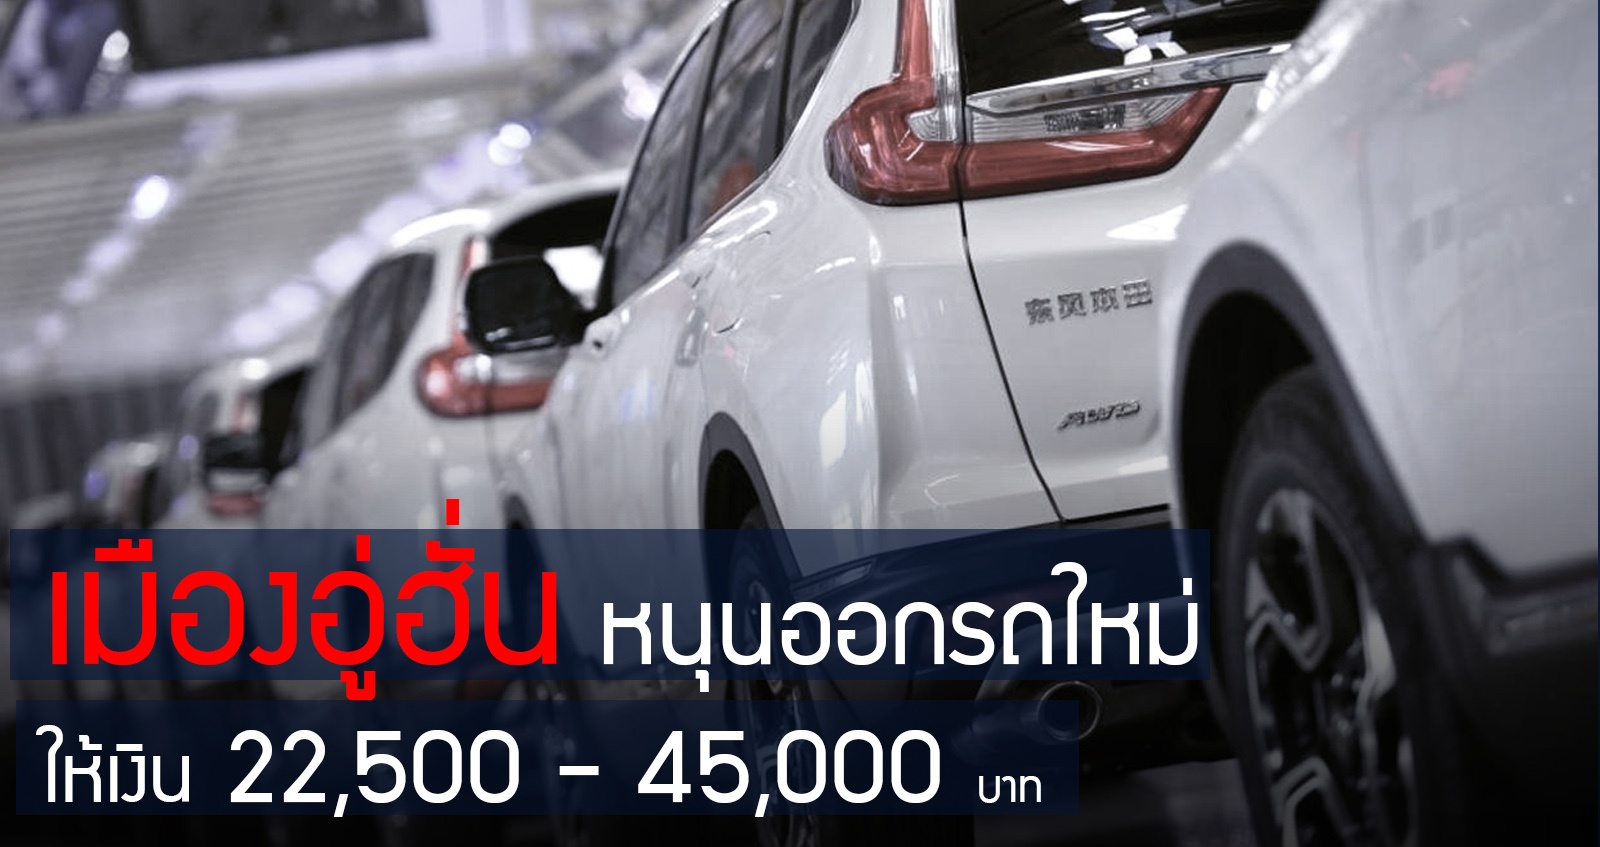 เมืองอู่ฮั่น ให้เงิน 22,500 – 45,000 บาท สำหรับคนที่ซื้อรถใหม่ หวัง ฟื้นเศรษฐกิจ